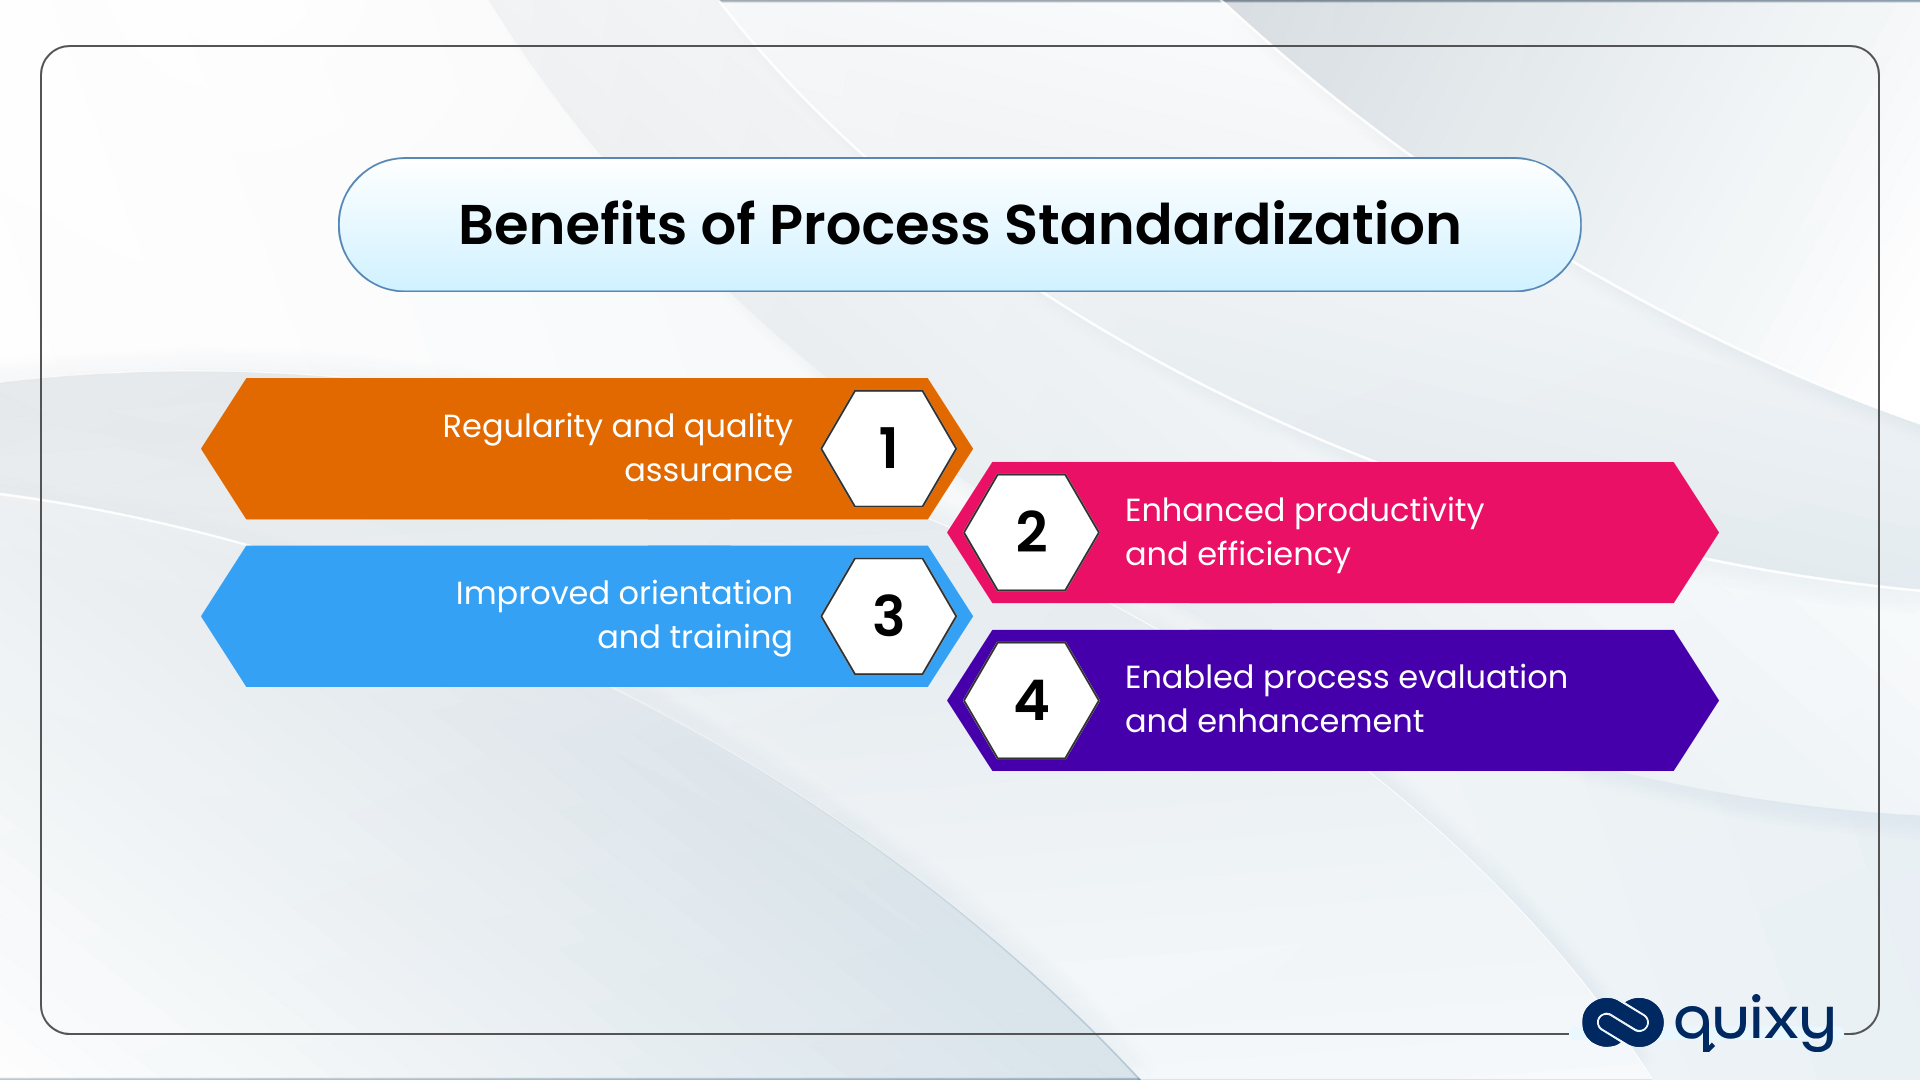 Benefits of Process Standardization